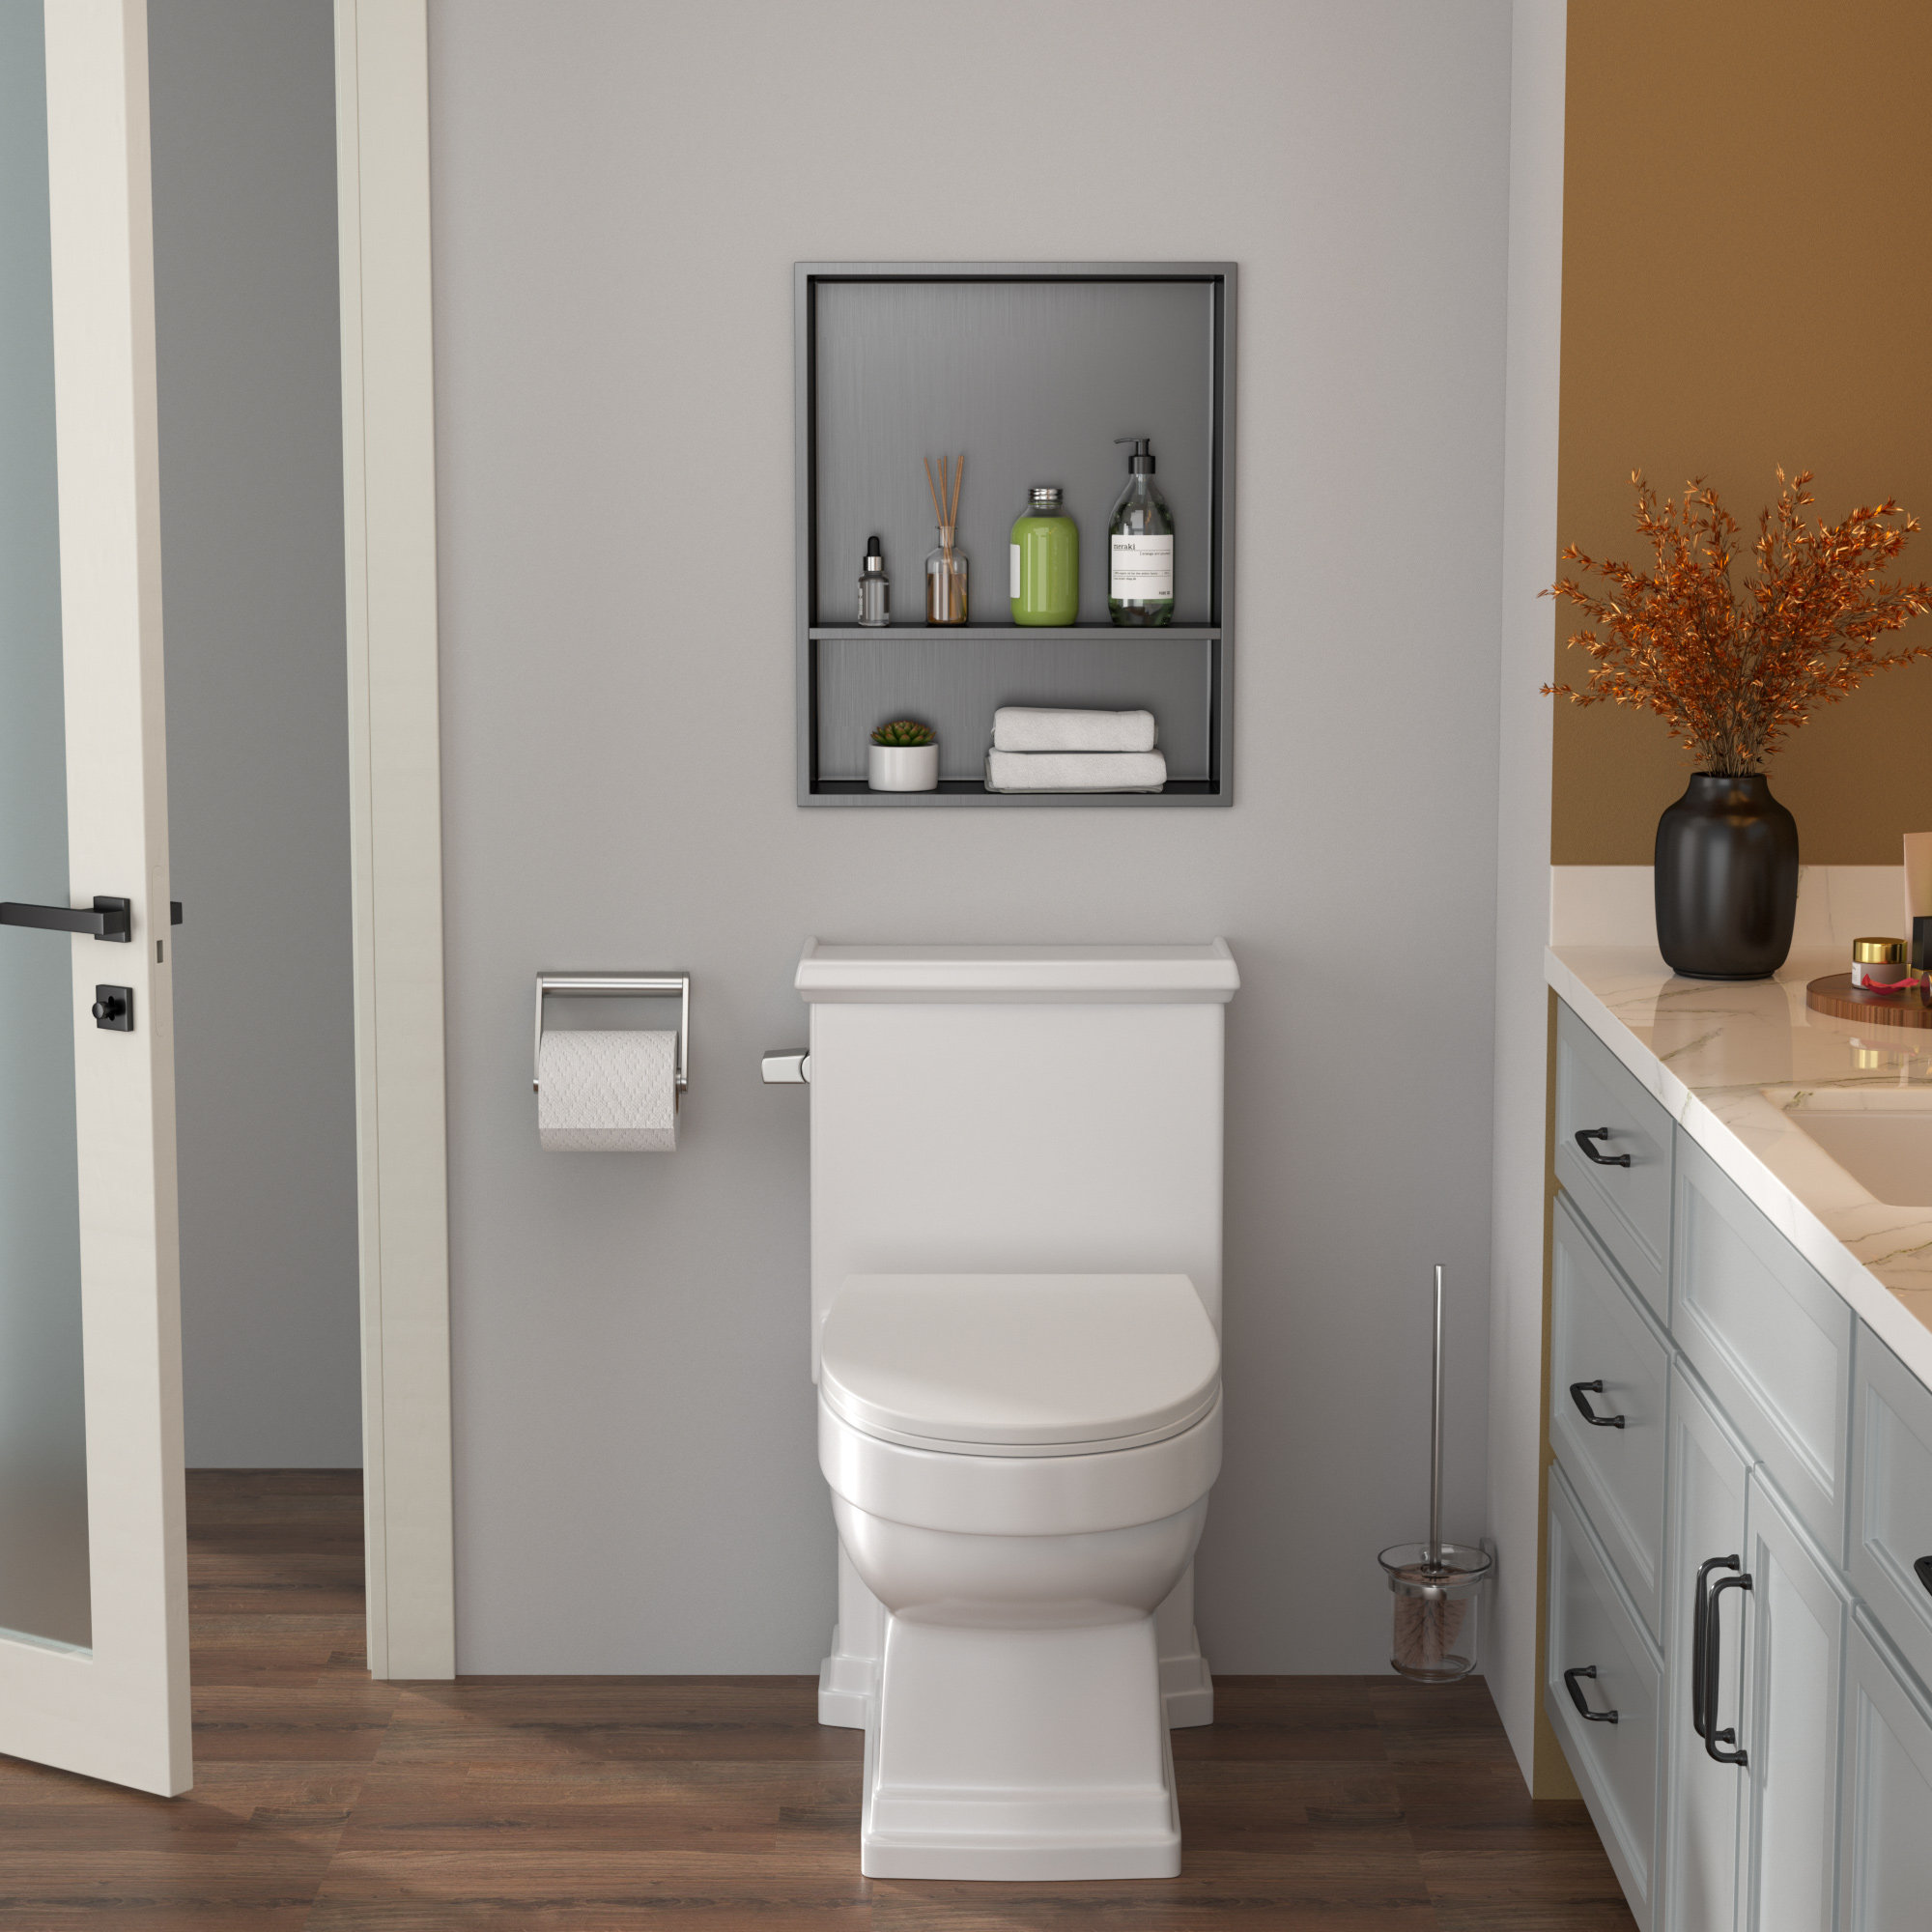 https://assets.wfcdn.com/im/30597351/compr-r85/2611/261177849/22-x-18-bathroom-shower-niche-stainless-steel-niche-recessed-shower-shelf-for-bathroom-storage.jpg